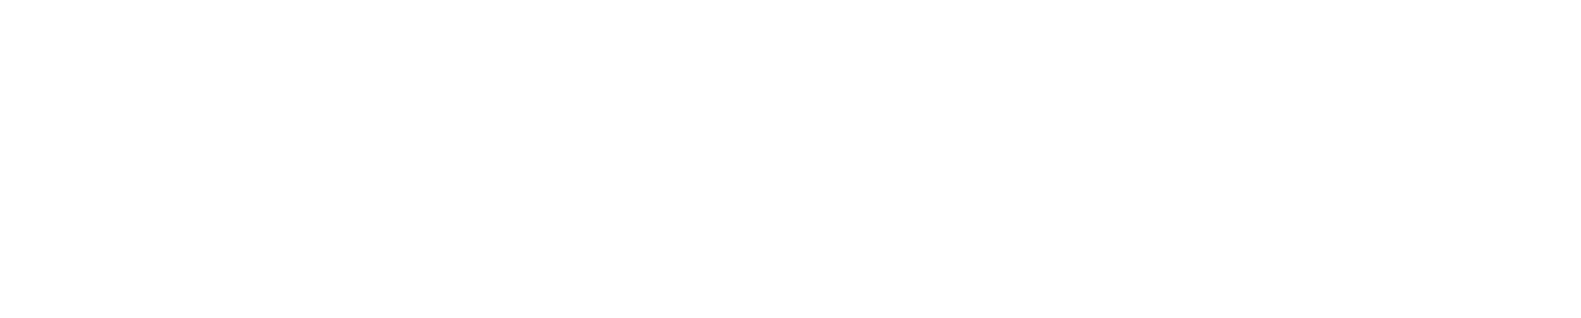 TC Bancshares logo grand pour les fonds sombres (PNG transparent)